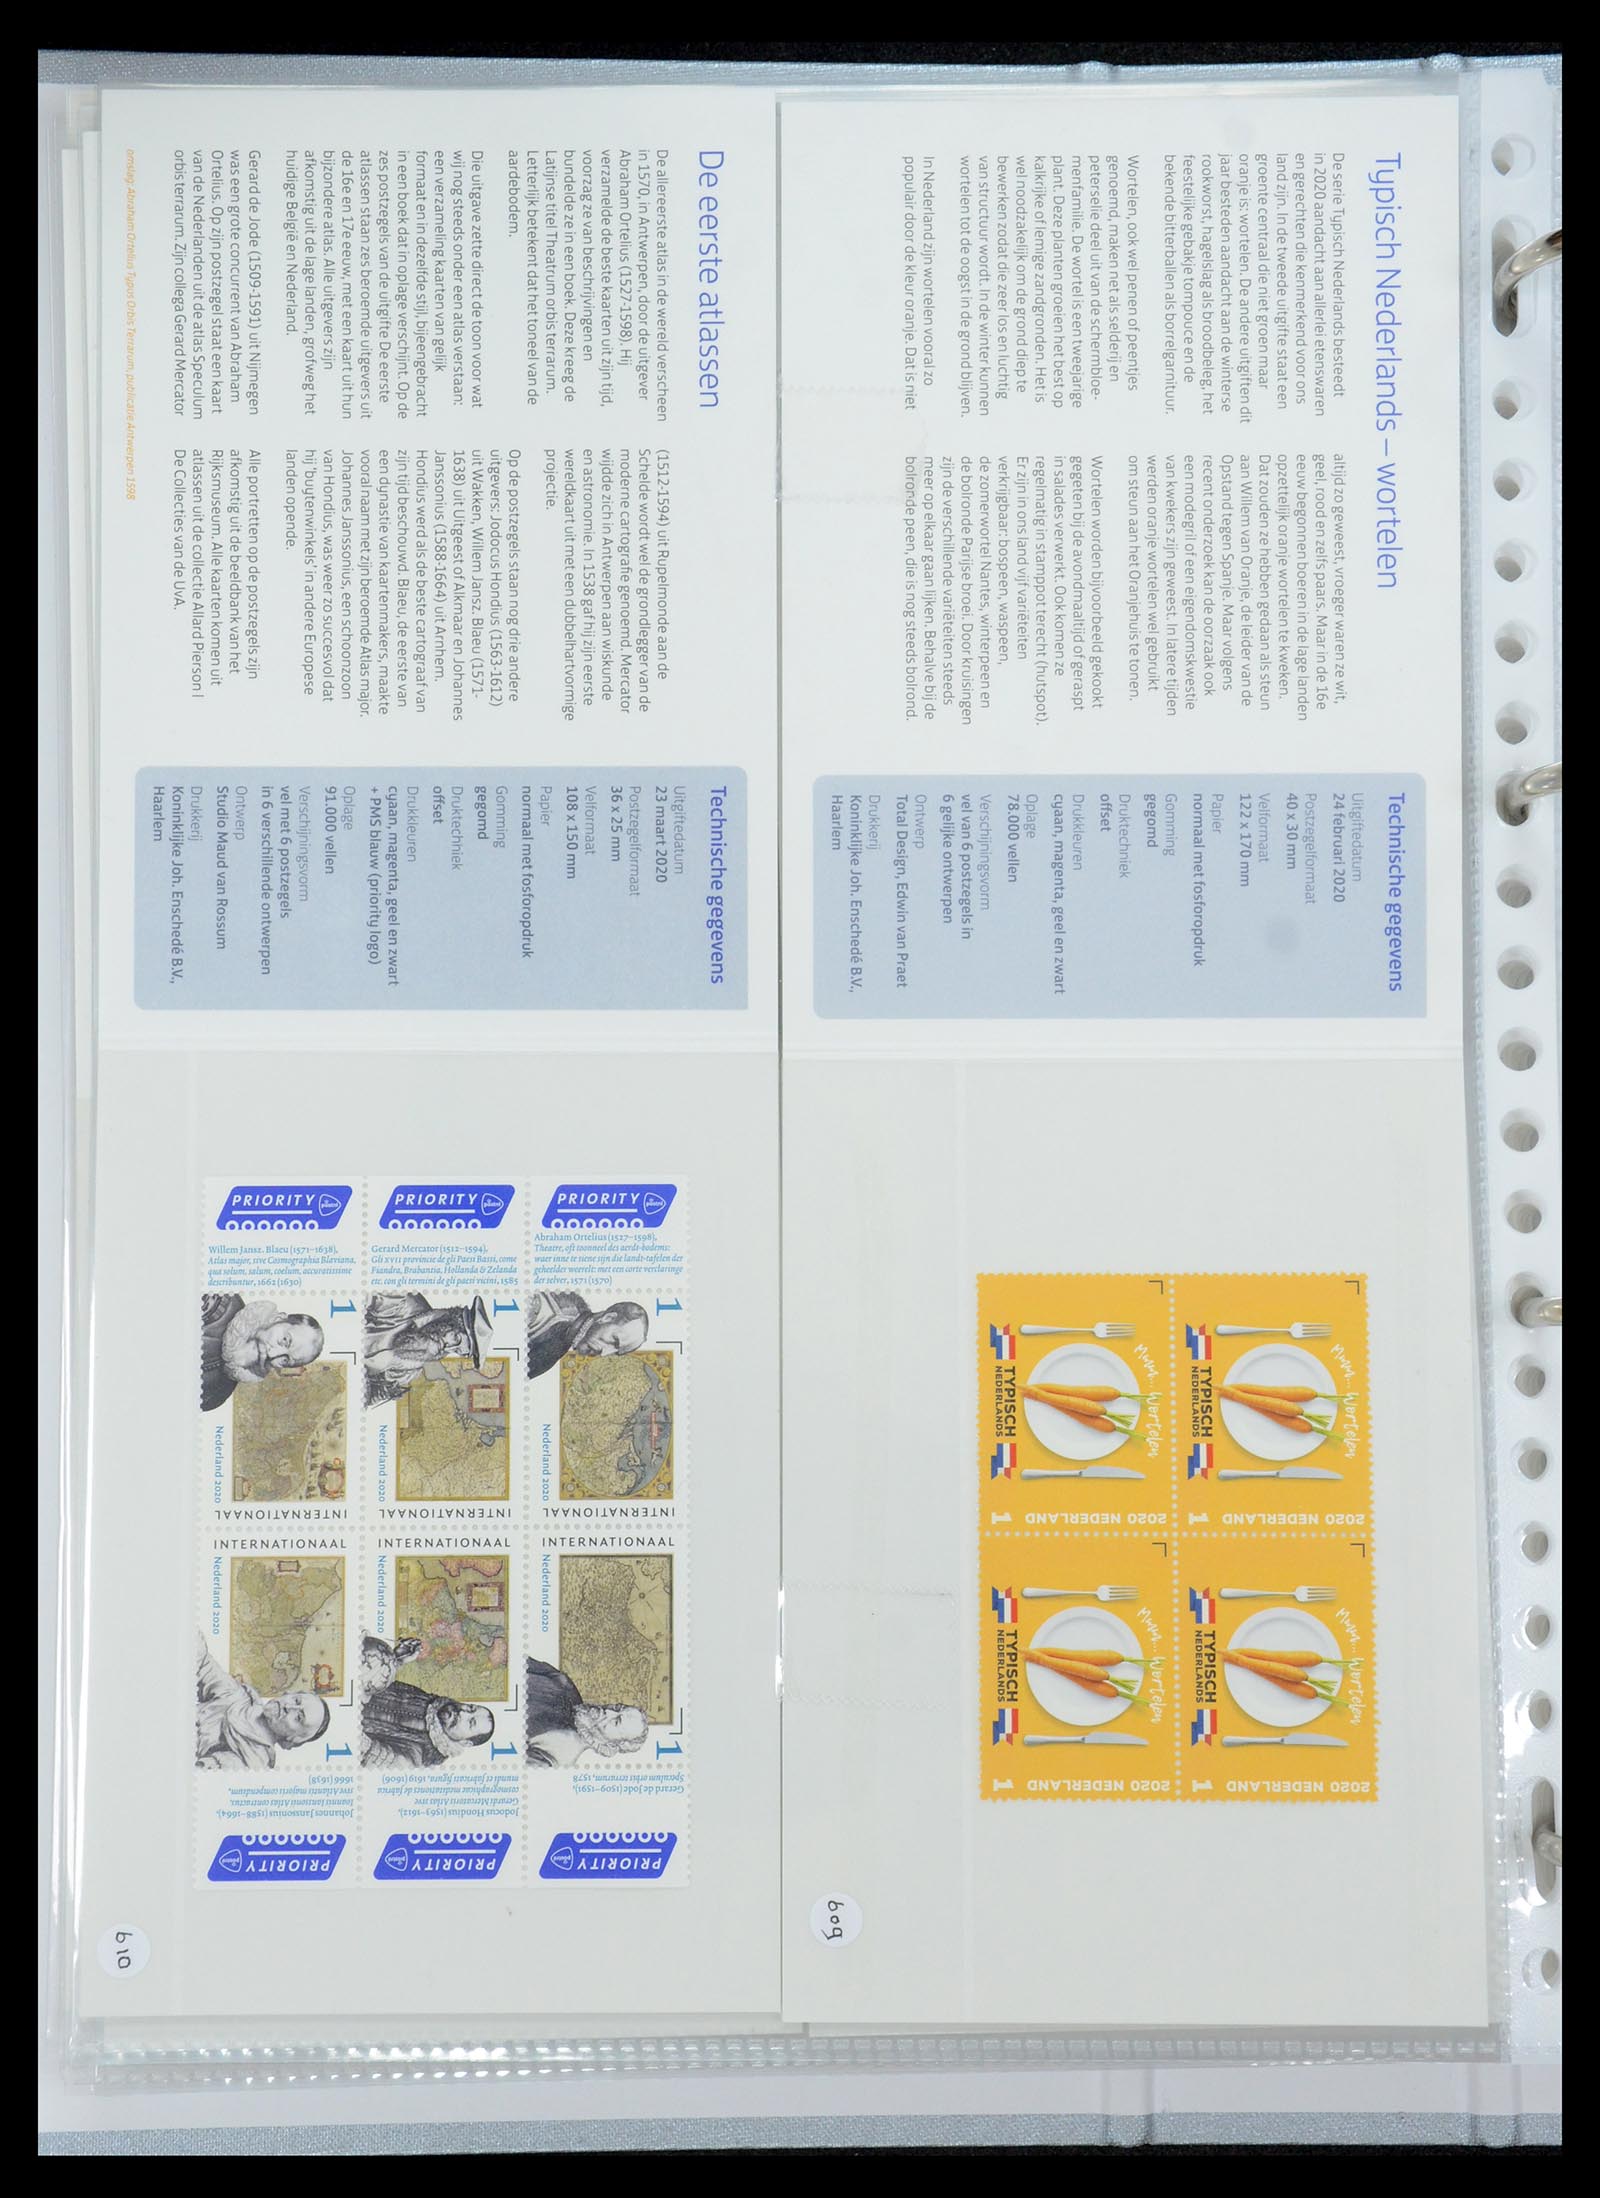 35692 370 - Stamp Collection 35692 Netherlands presentation packs 1982-2021!!